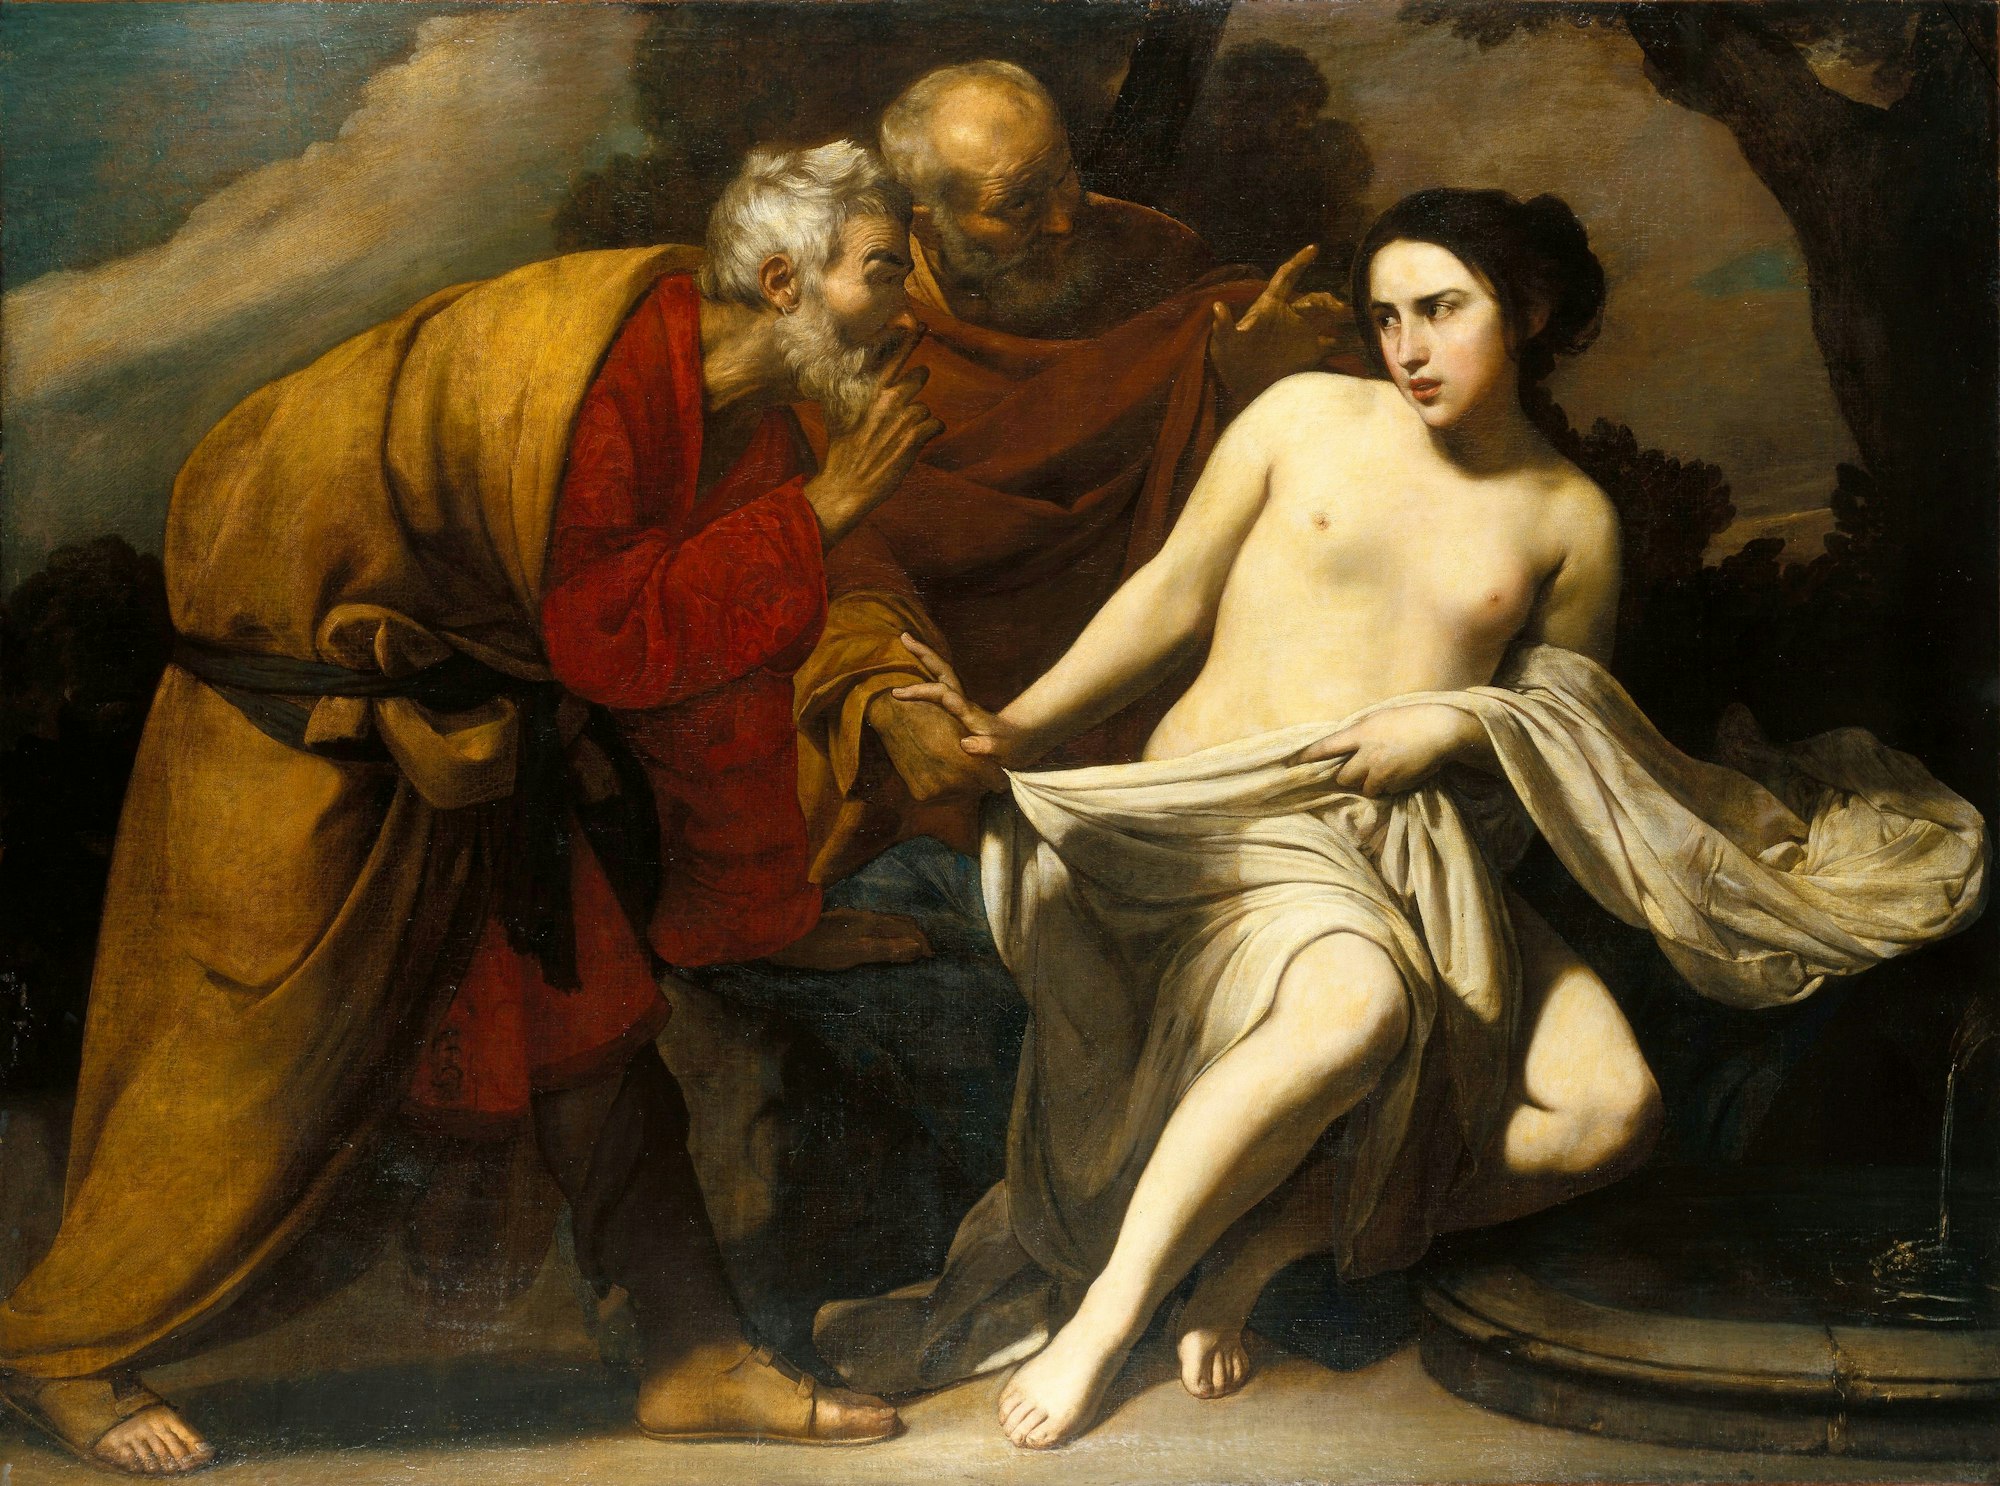 Auf Massimo Stanziones Gemälde „Susanna und die beiden Alten“ sieht man zwei ältere Männer, die eine kaum bekleidete Frau bedrängen.